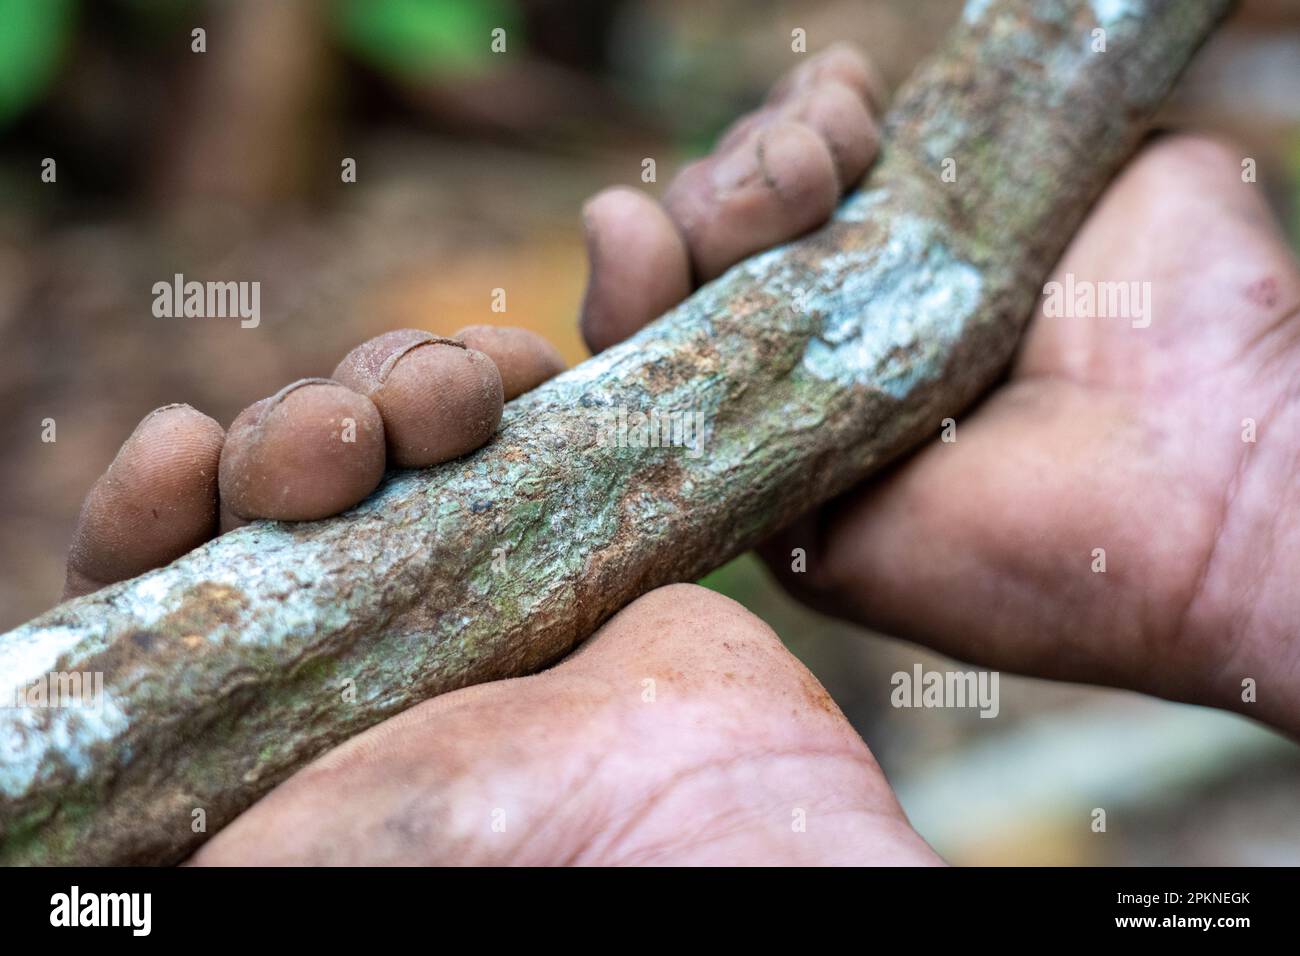 La corteccia e le foglie di ayahuasca (Banisteriopsis caapi) vengono scomporre bollite e distillate per essere utilizzate nella pratica sacra e rituale nel bacino del Rio delle Amazzoni Foto Stock